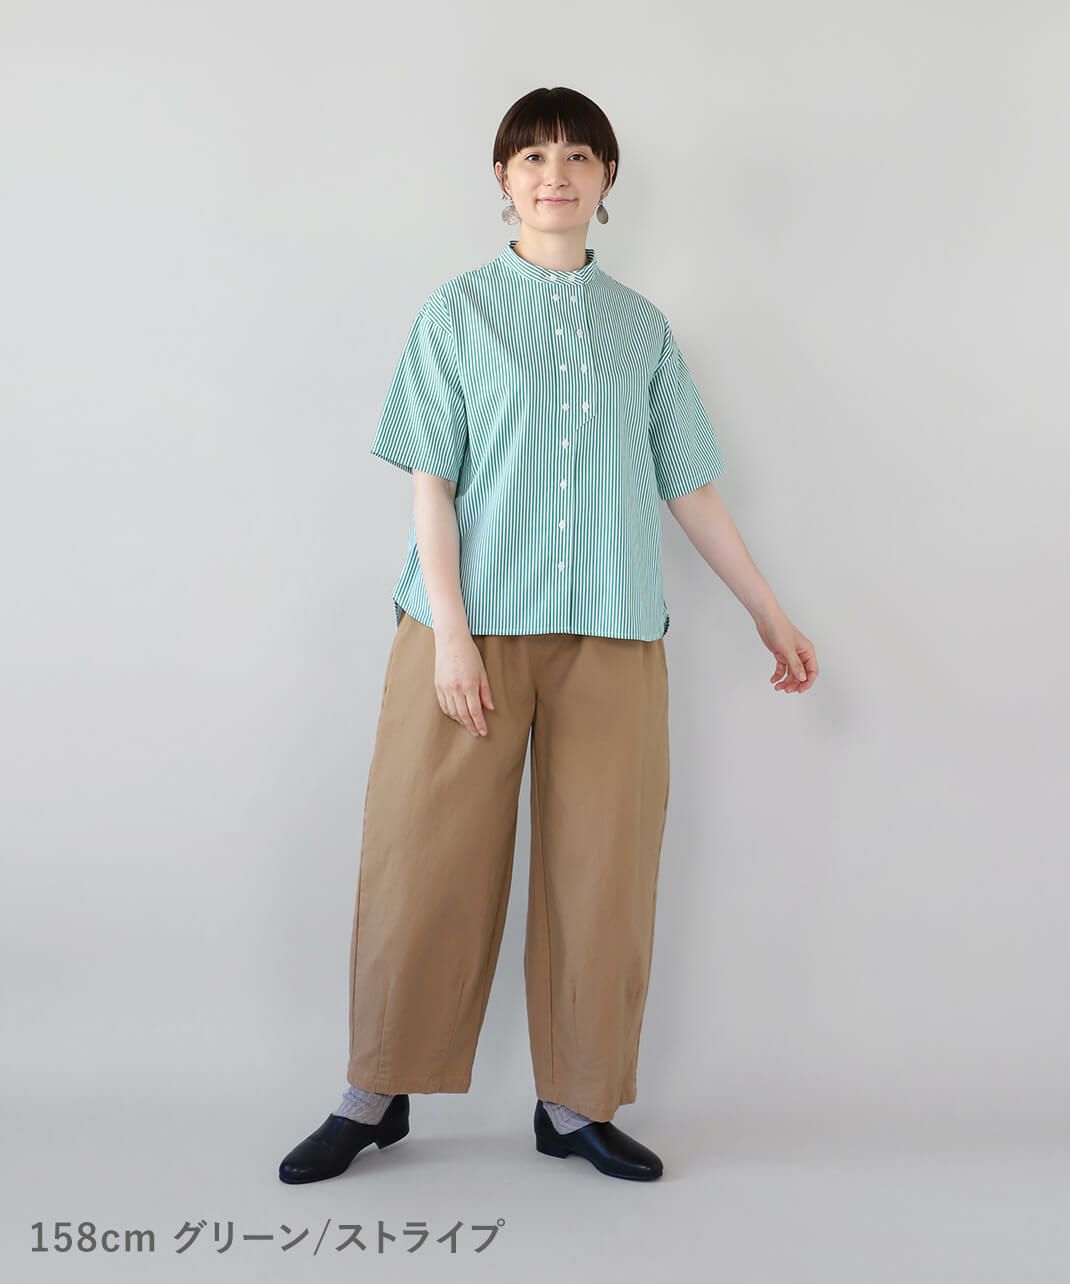 mumokuteki秘密のダブルボタン半袖シャツ グリーン/ストライプ 着画